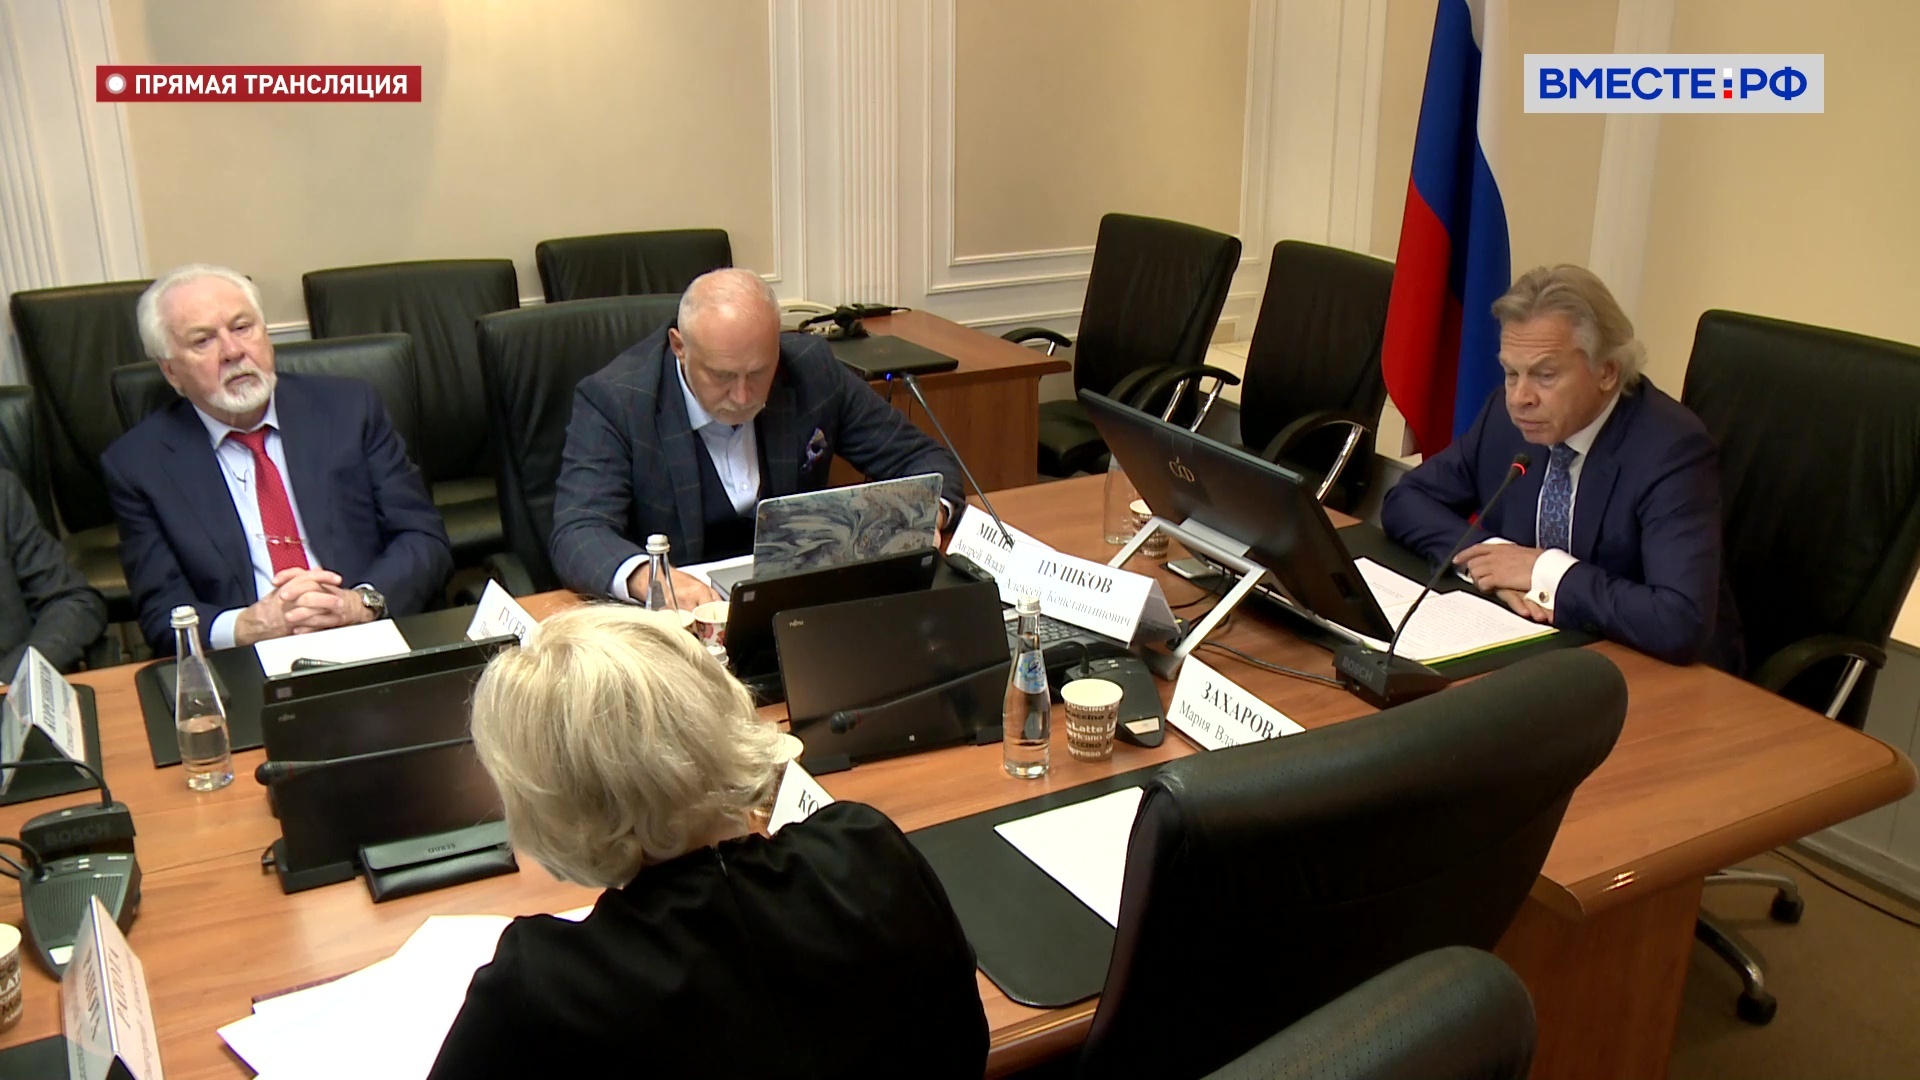 Алексей Пушков заявил, что перед РФ стоят серьёзные задачи формирования новой информационной политики за рубежом